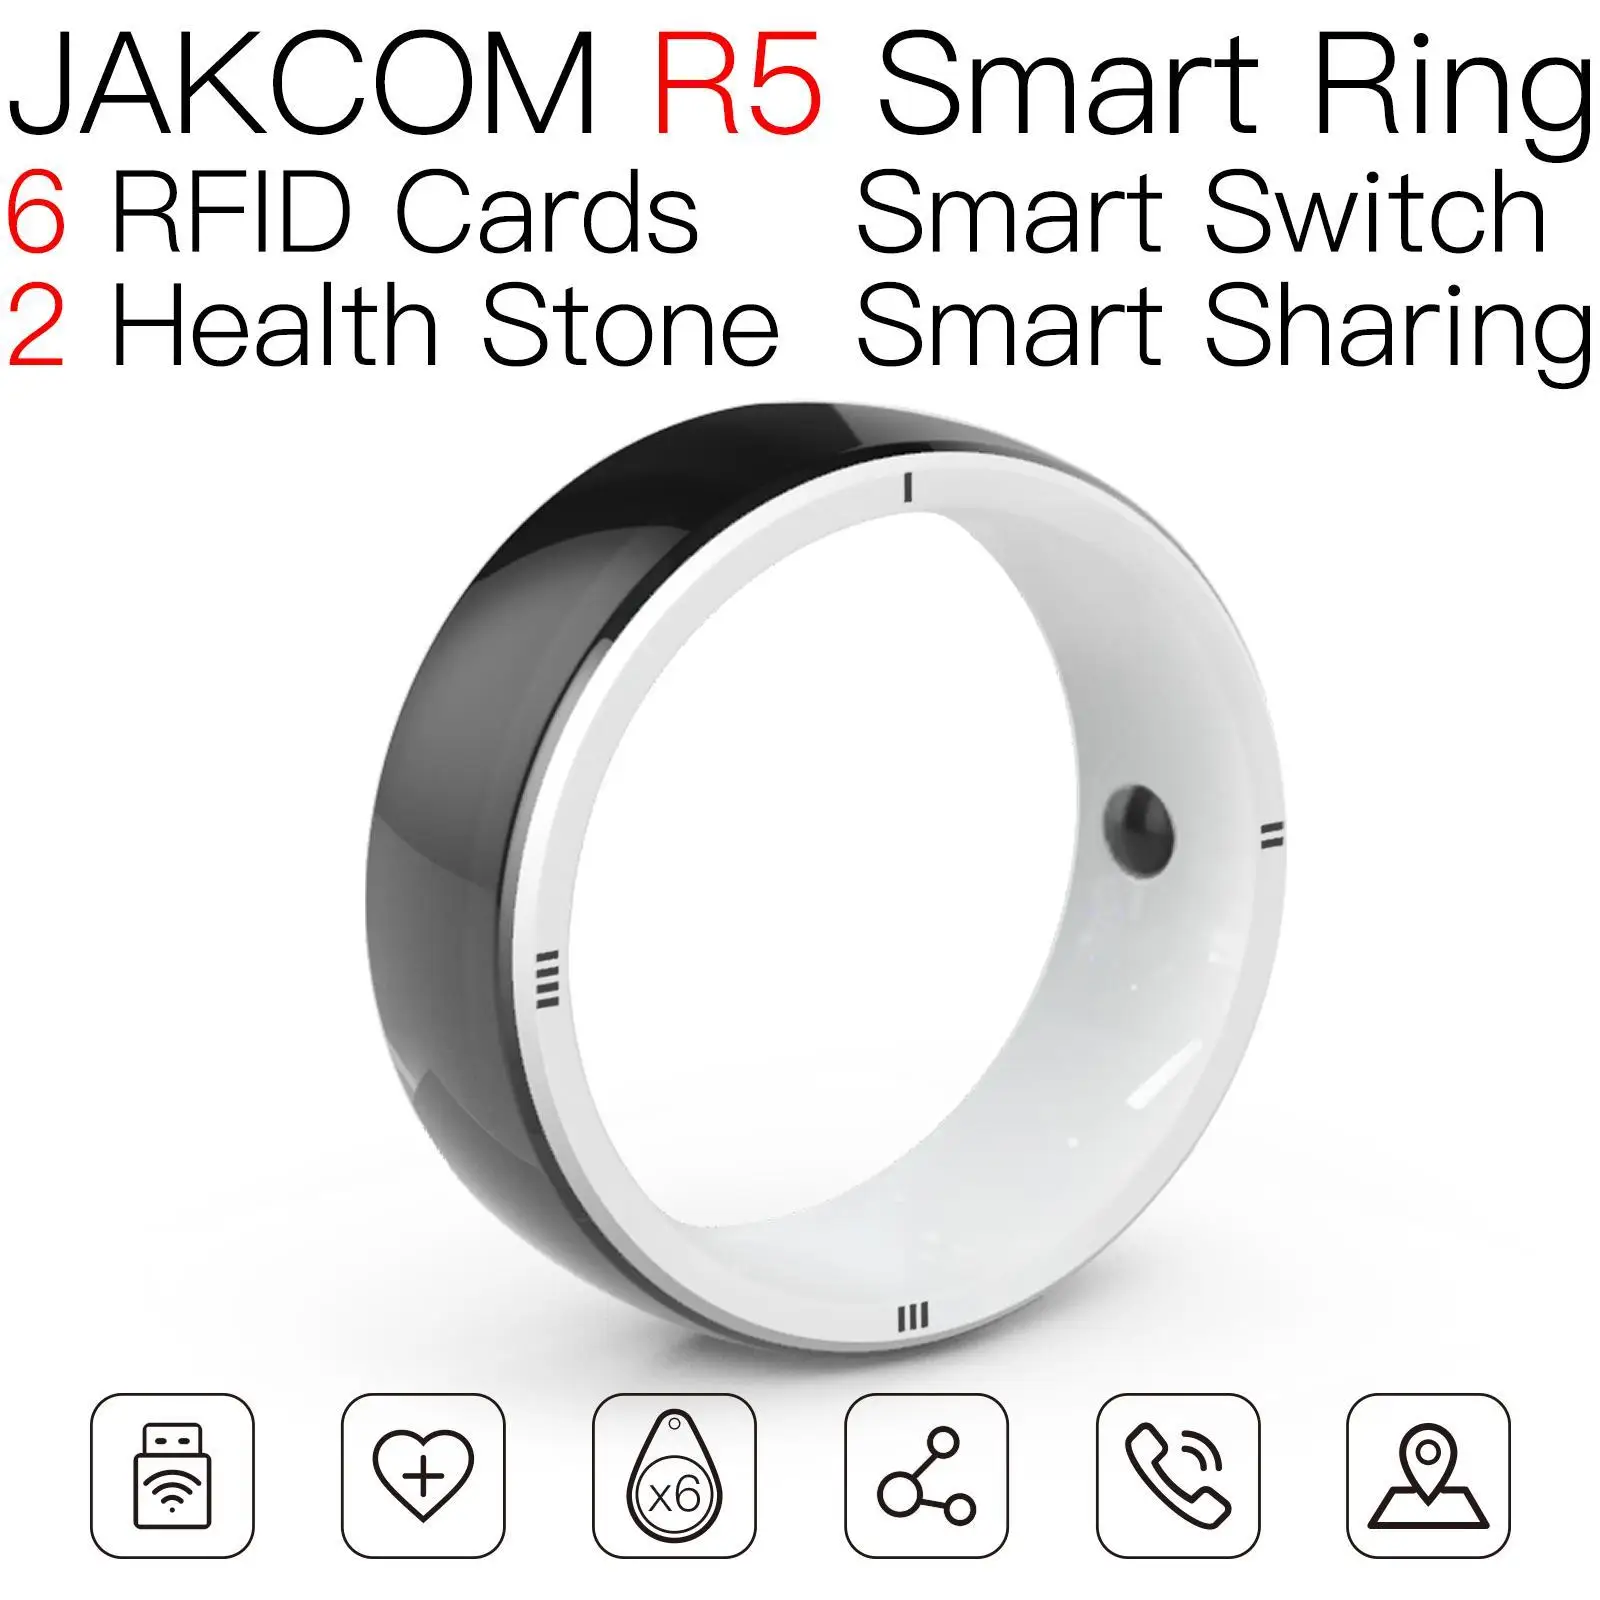 

Смарт-кольцо JAKCOM R5, Новое поступление, как учетная запись netflix, Европейская бирка 4k, карта ammibo, металлический бизнес-ридер, nfc, rfid-ридер